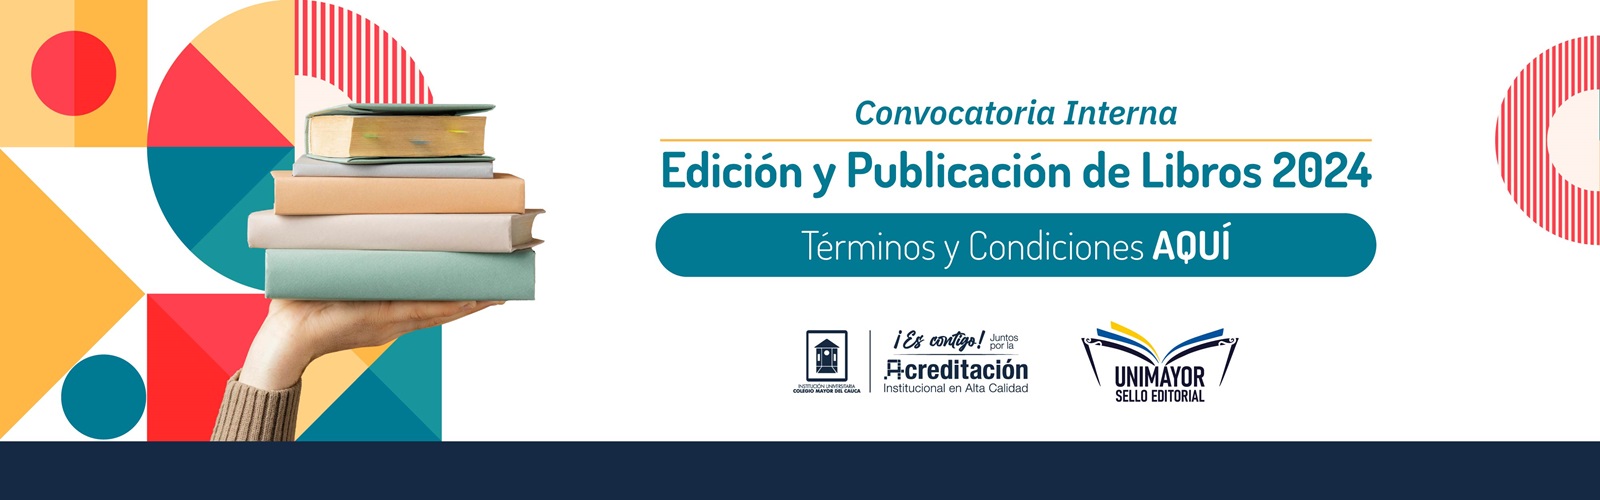 Banner_Edicion_y_Publicacion_de_Libros_2024